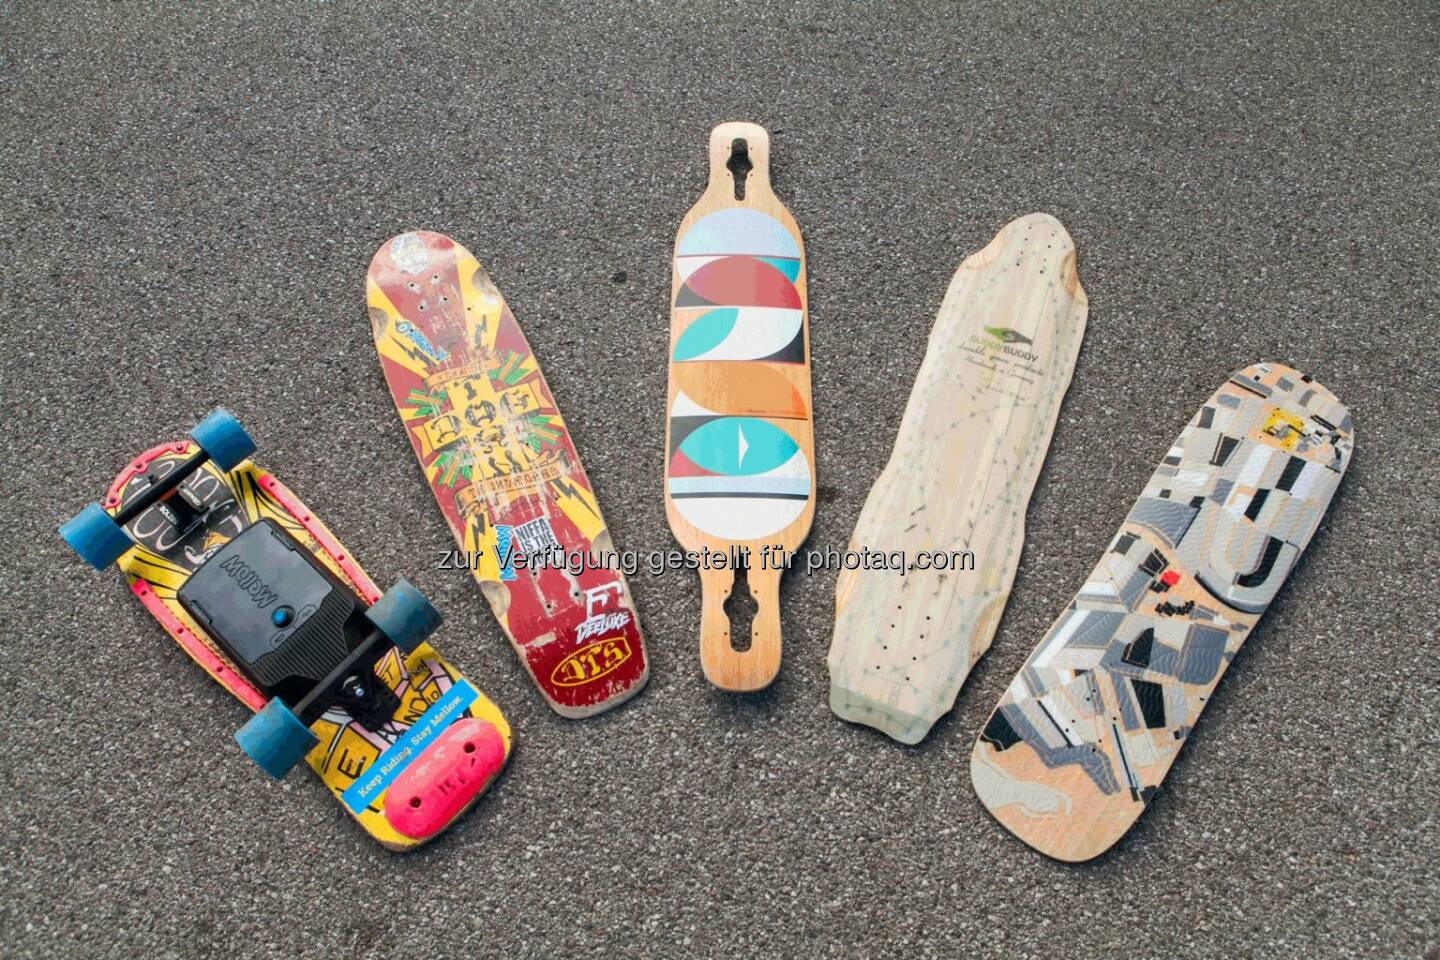 Mellow Boards : Antrieb, der aus jedem normalen Skateboard ein Elektroboard macht : Unter den 10 besten Mobility Startups in Europa : Fotocredit: Mellow Boards GmbH